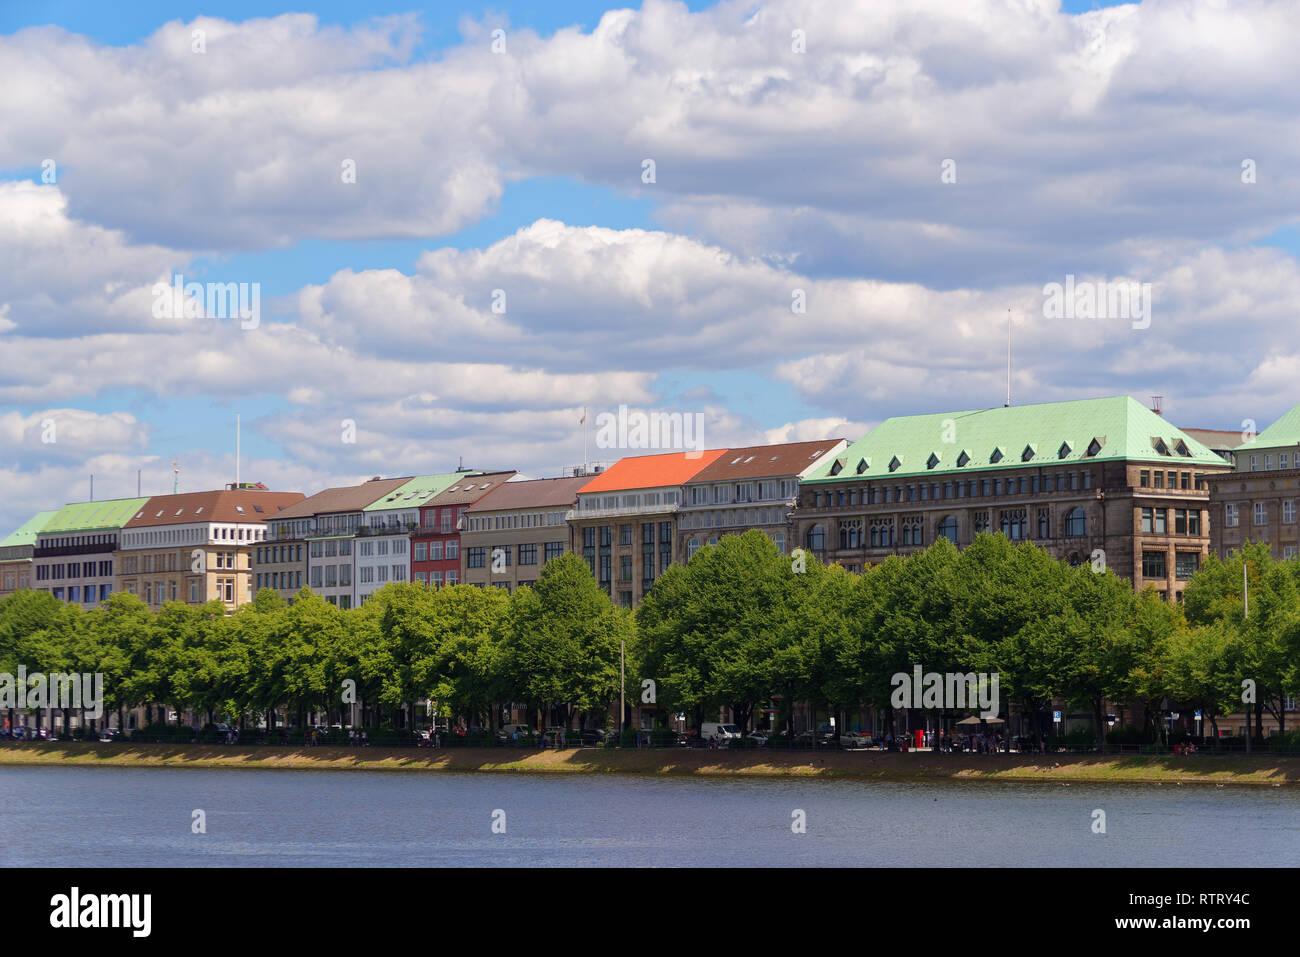 Hamburgo, Alemania - 30 de junio, 2018: coloridos techos de edificios en Ballindamm, Jungfernstieg contra azul cielo nublado Foto de stock